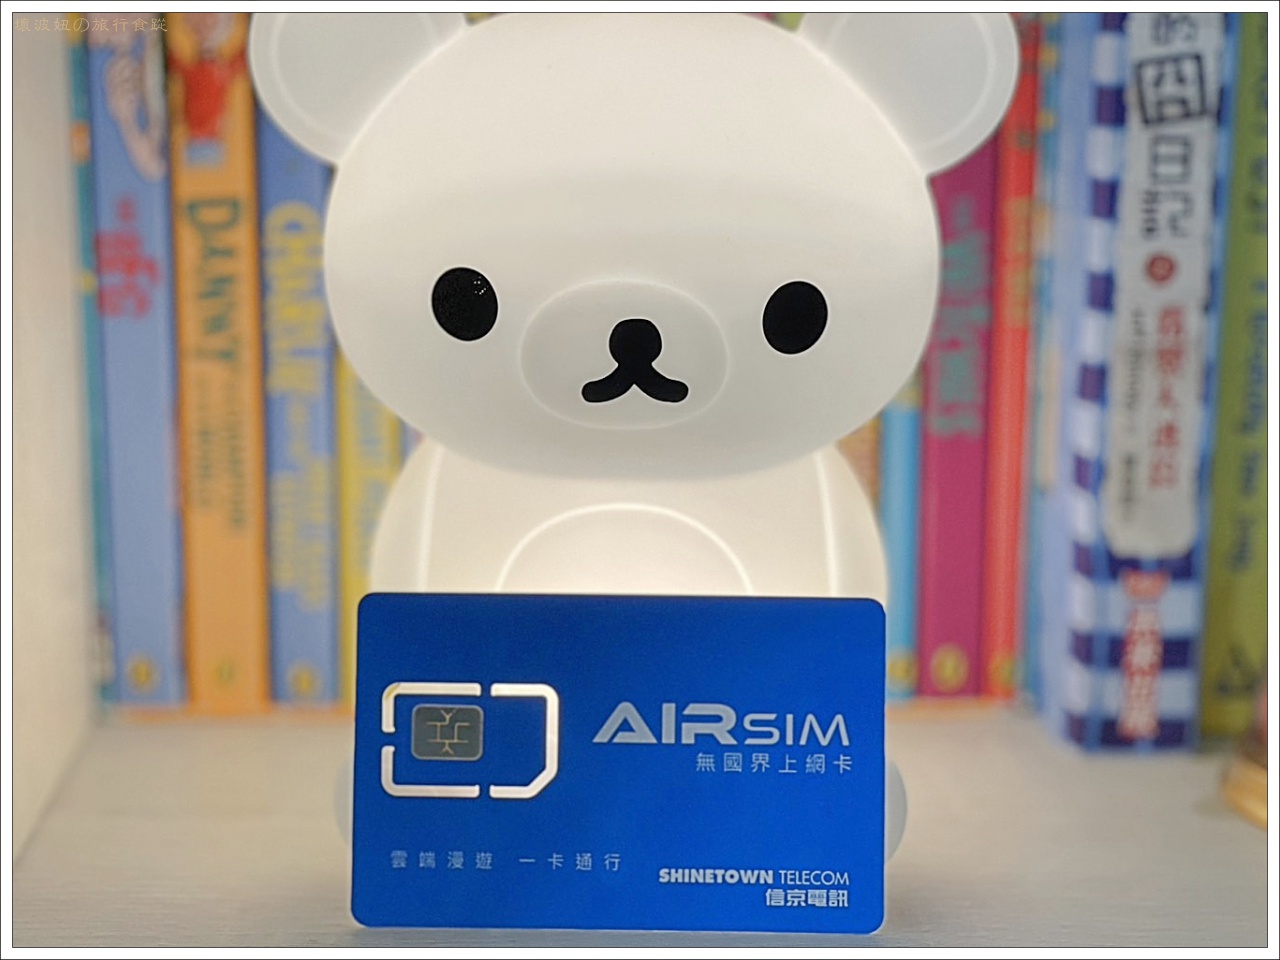 【日本漫遊推薦】AIRSIM無國界上網卡，一張網卡走遍世界，可開熱點分享還送30分鐘免費通話 - AIRSIM esim, AIRSIM使用方式, AIRSIM價格, AIRSIM優惠, AIRSIM評價, 多國上網sim卡, 支援熱點的上網卡, 日本eSIM上網, 日本sim卡上網 - 壞波妞の旅行食踨